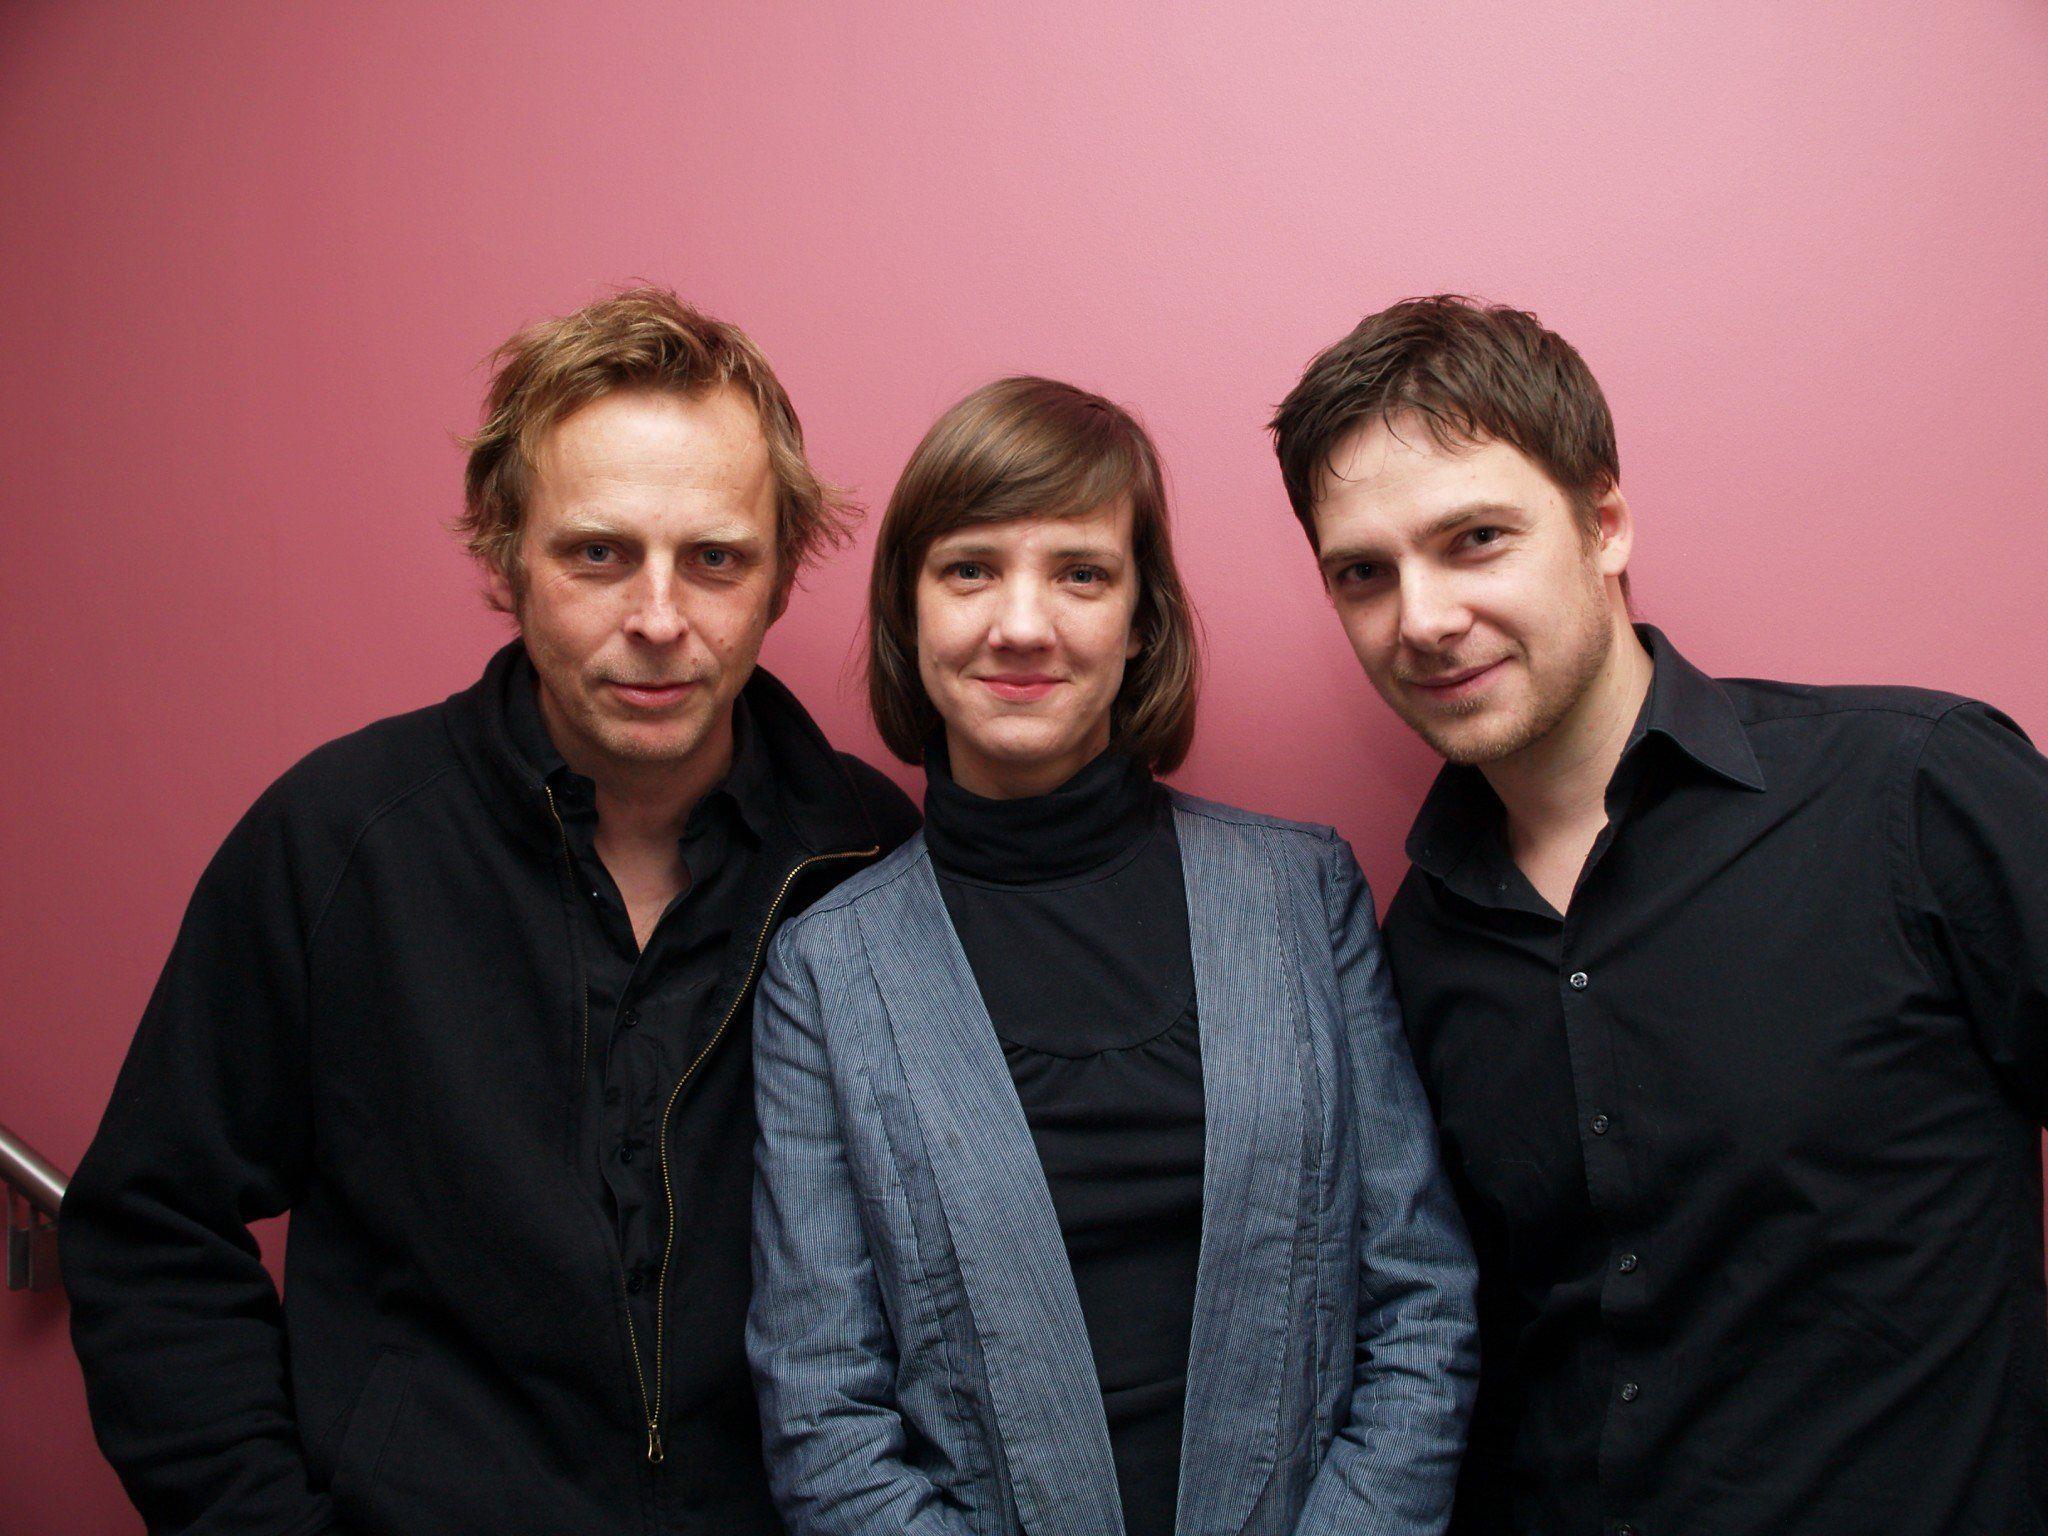 Regisseur Florian Flicker, Doris Scheidtinger und Schauspieler Stefan Pohl